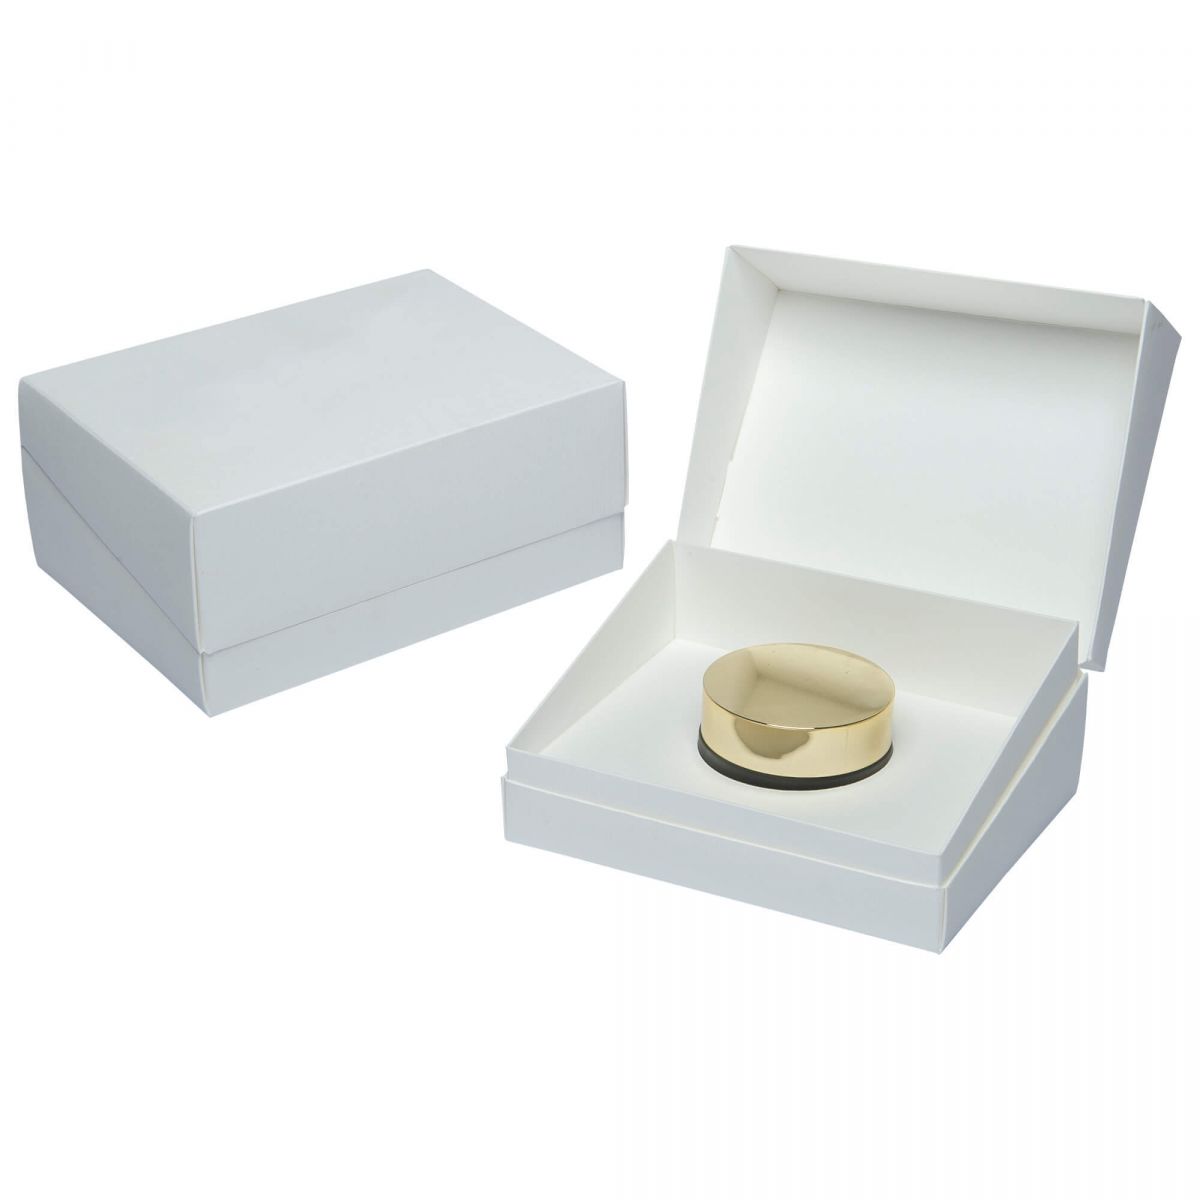 scatola a cofanetto per confezioni di bigiotteria, gioielli, preziosi, piccoli oggetti